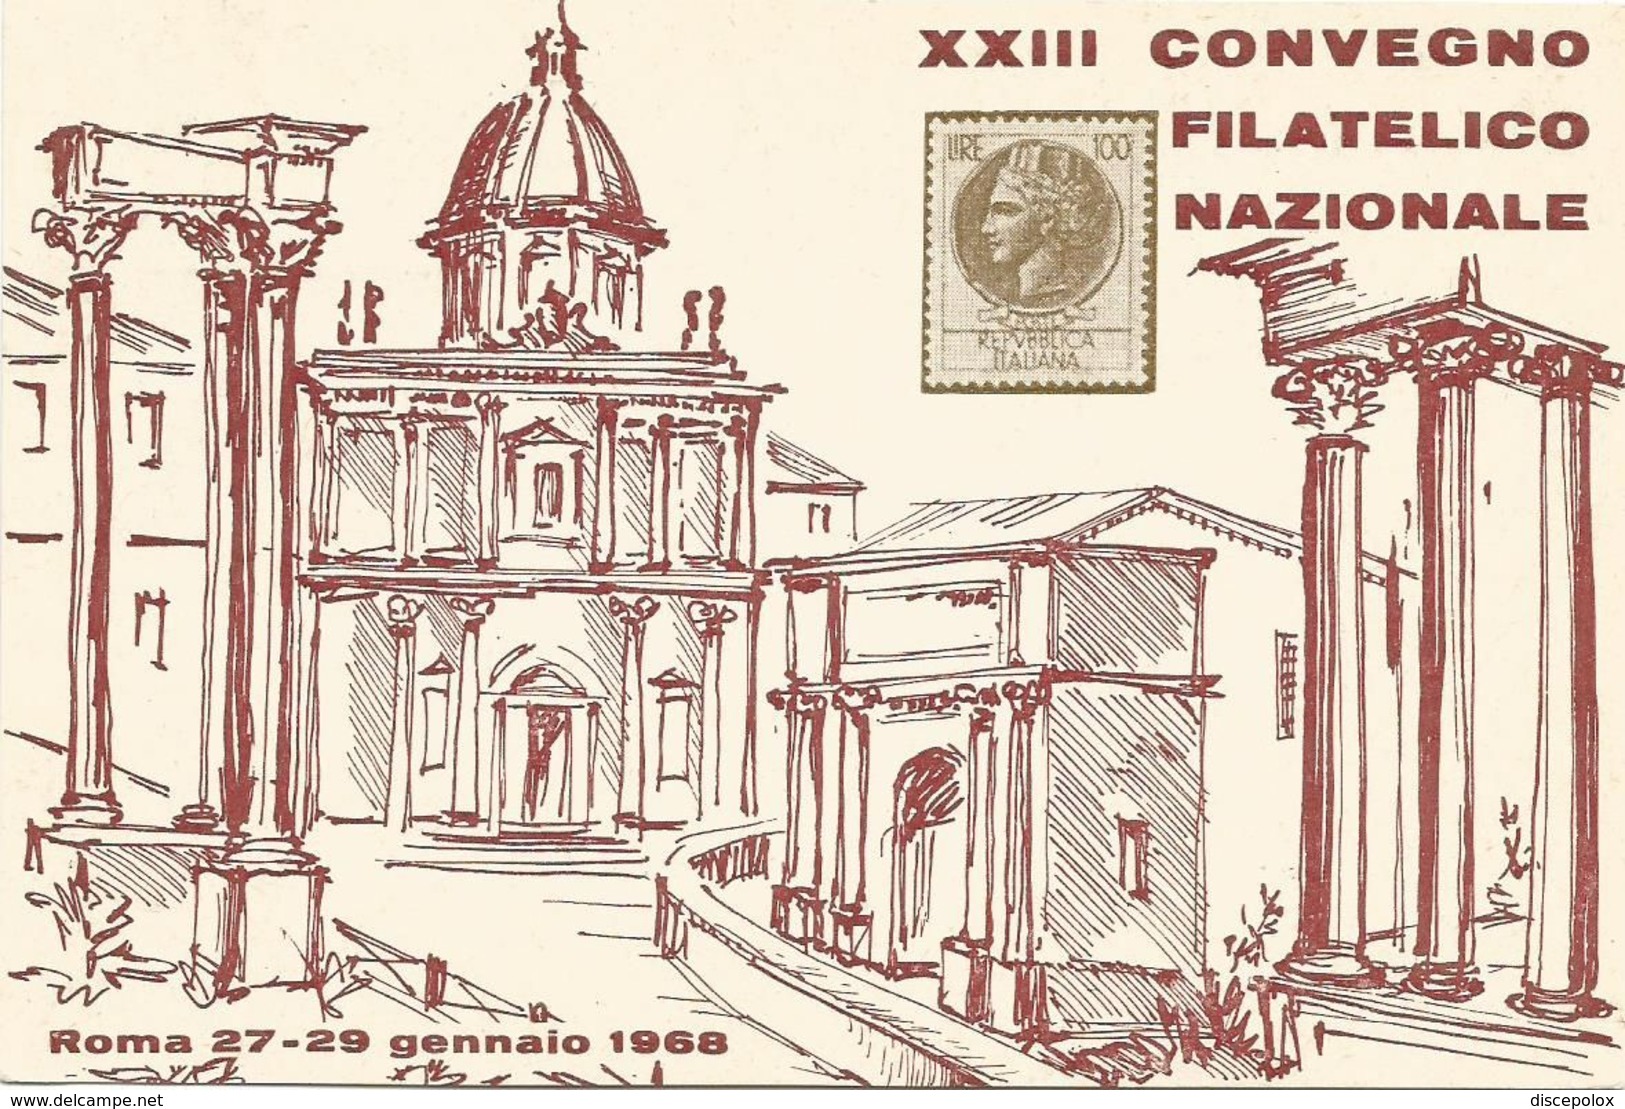 XW 2439 Roma - XXIII Convegno Filatelico Nazionale 1968 - Stazione Termini - Annullo Commemorativo - Exhibitions